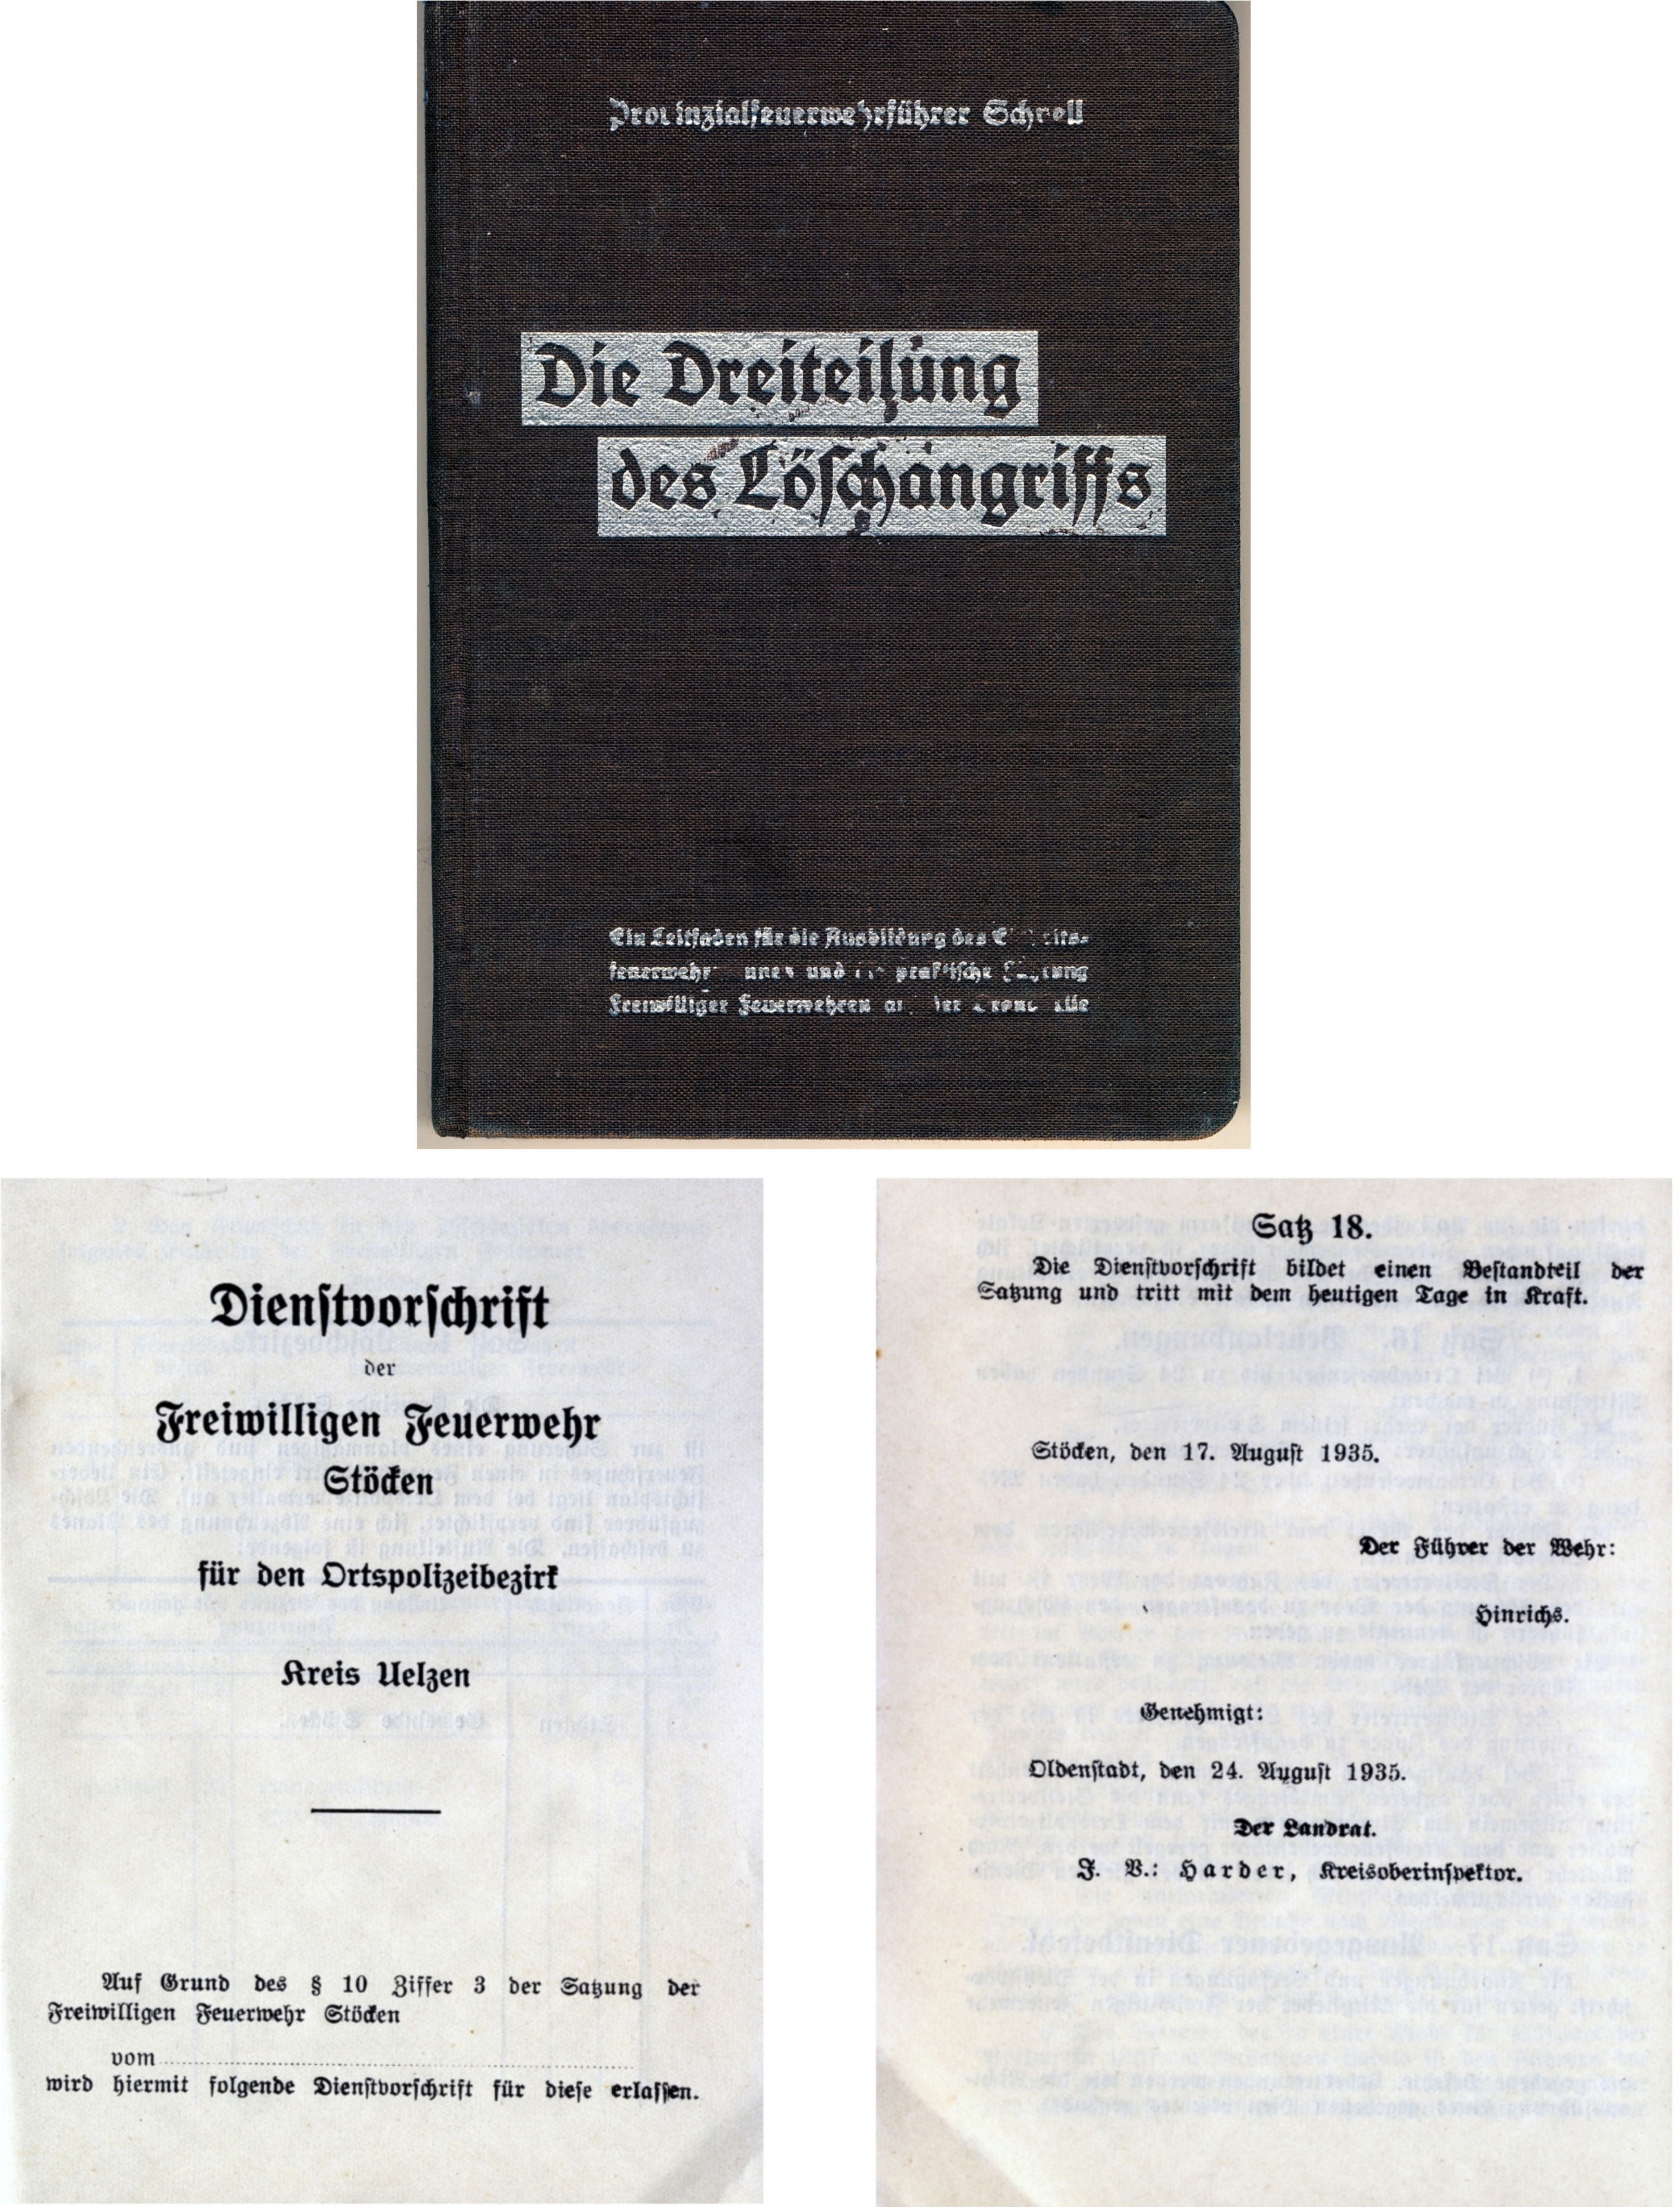 Feuerwehr: Dienstvorschrift und Dreiteilung des Löschangriffs 1935